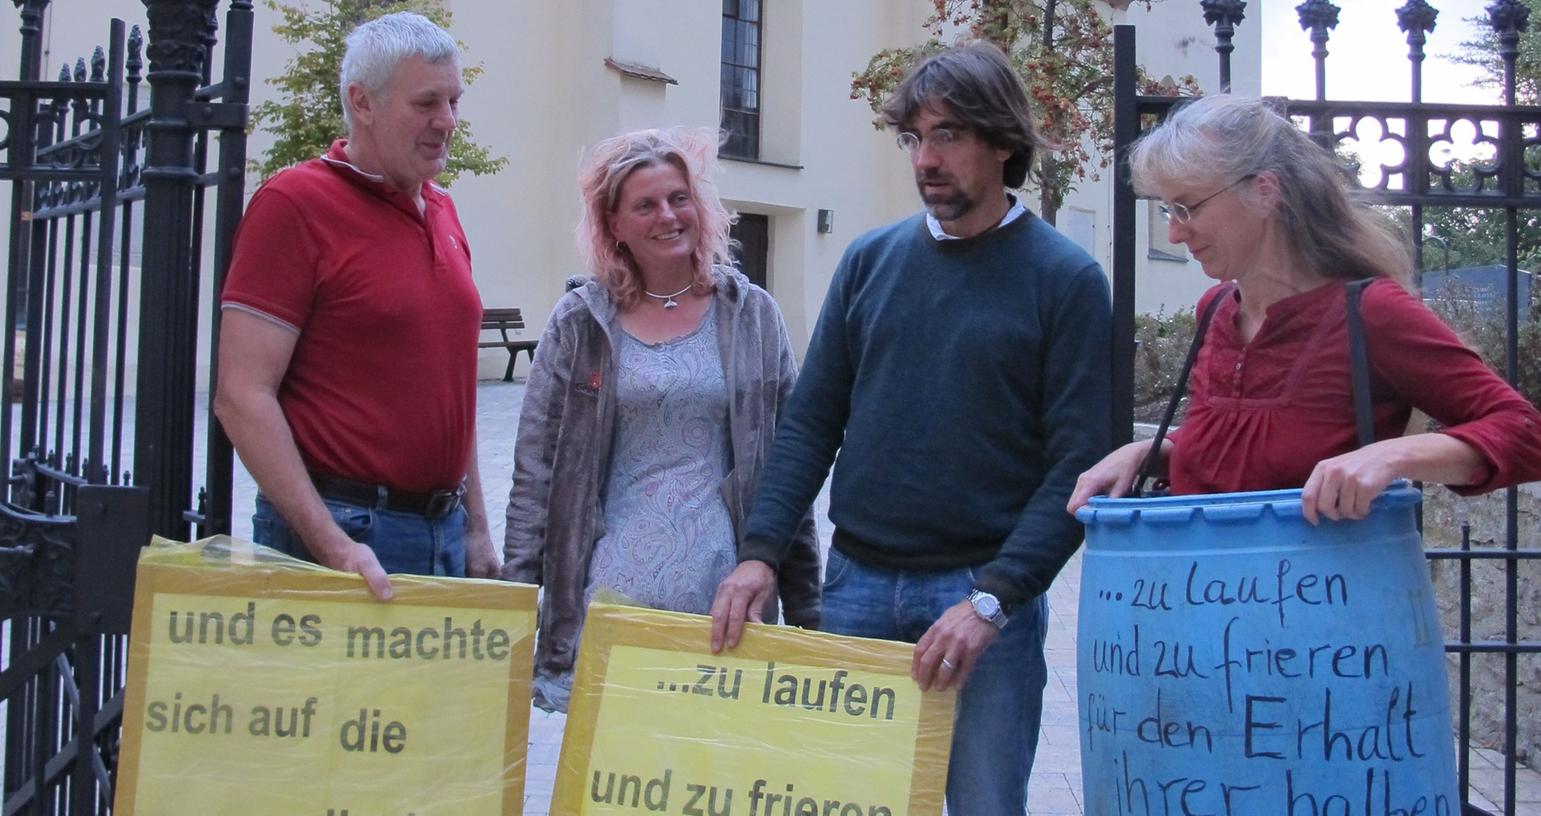 Für seine Pfarrerin: Geilsheim wehrt sich gegen Landeskirche